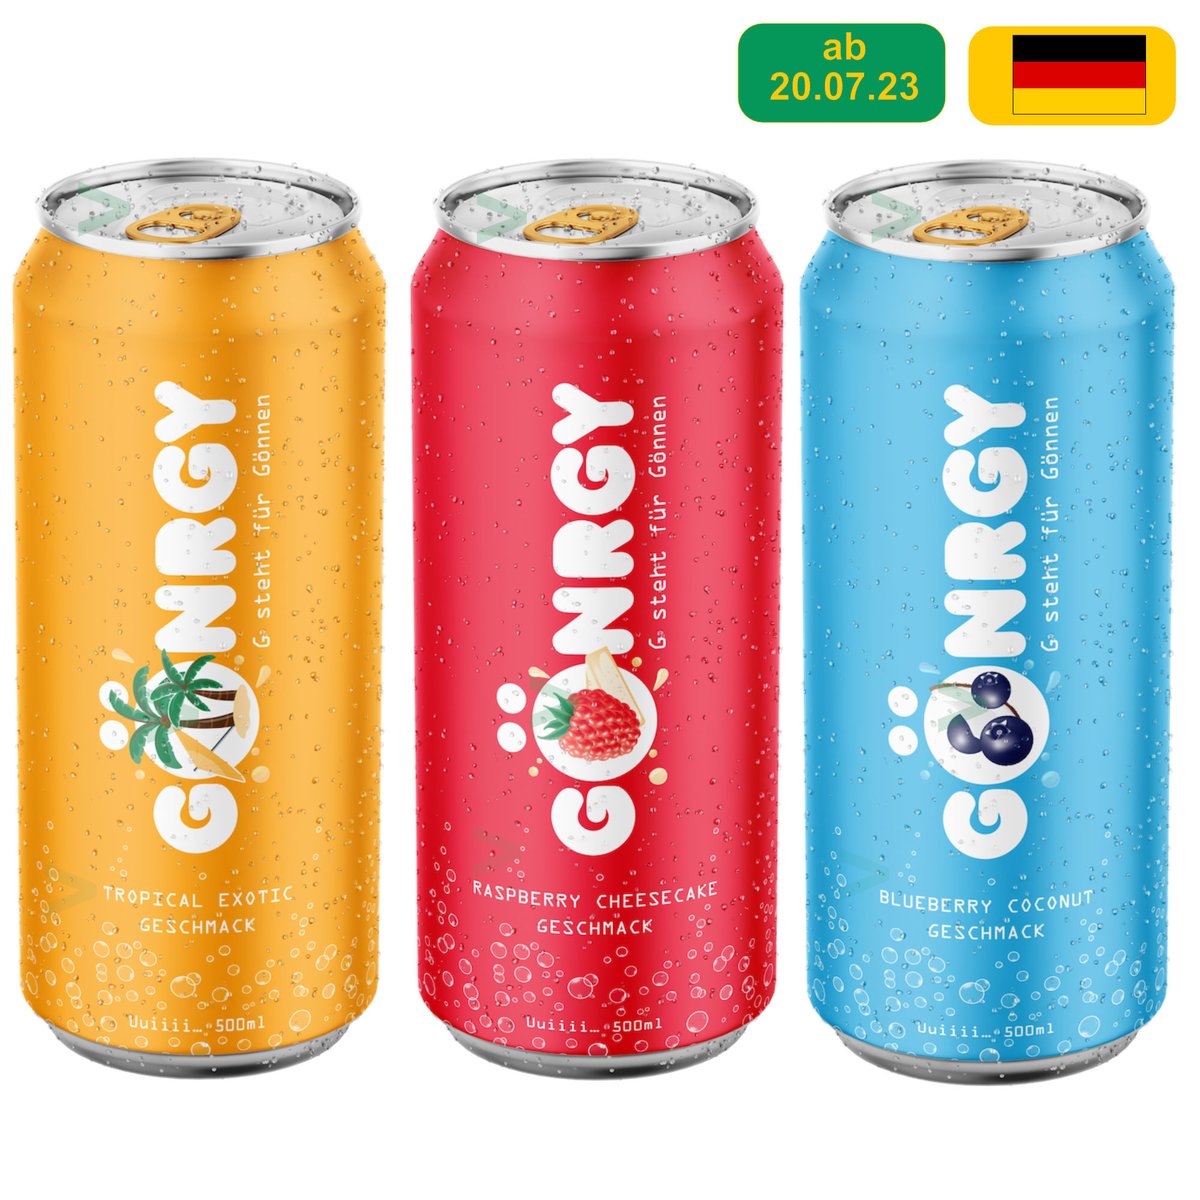 #Gönrgy #Energydrink von @montanablack #twitch #streamer #youtube #drinks #germanfood ab 20.7. lieferbar